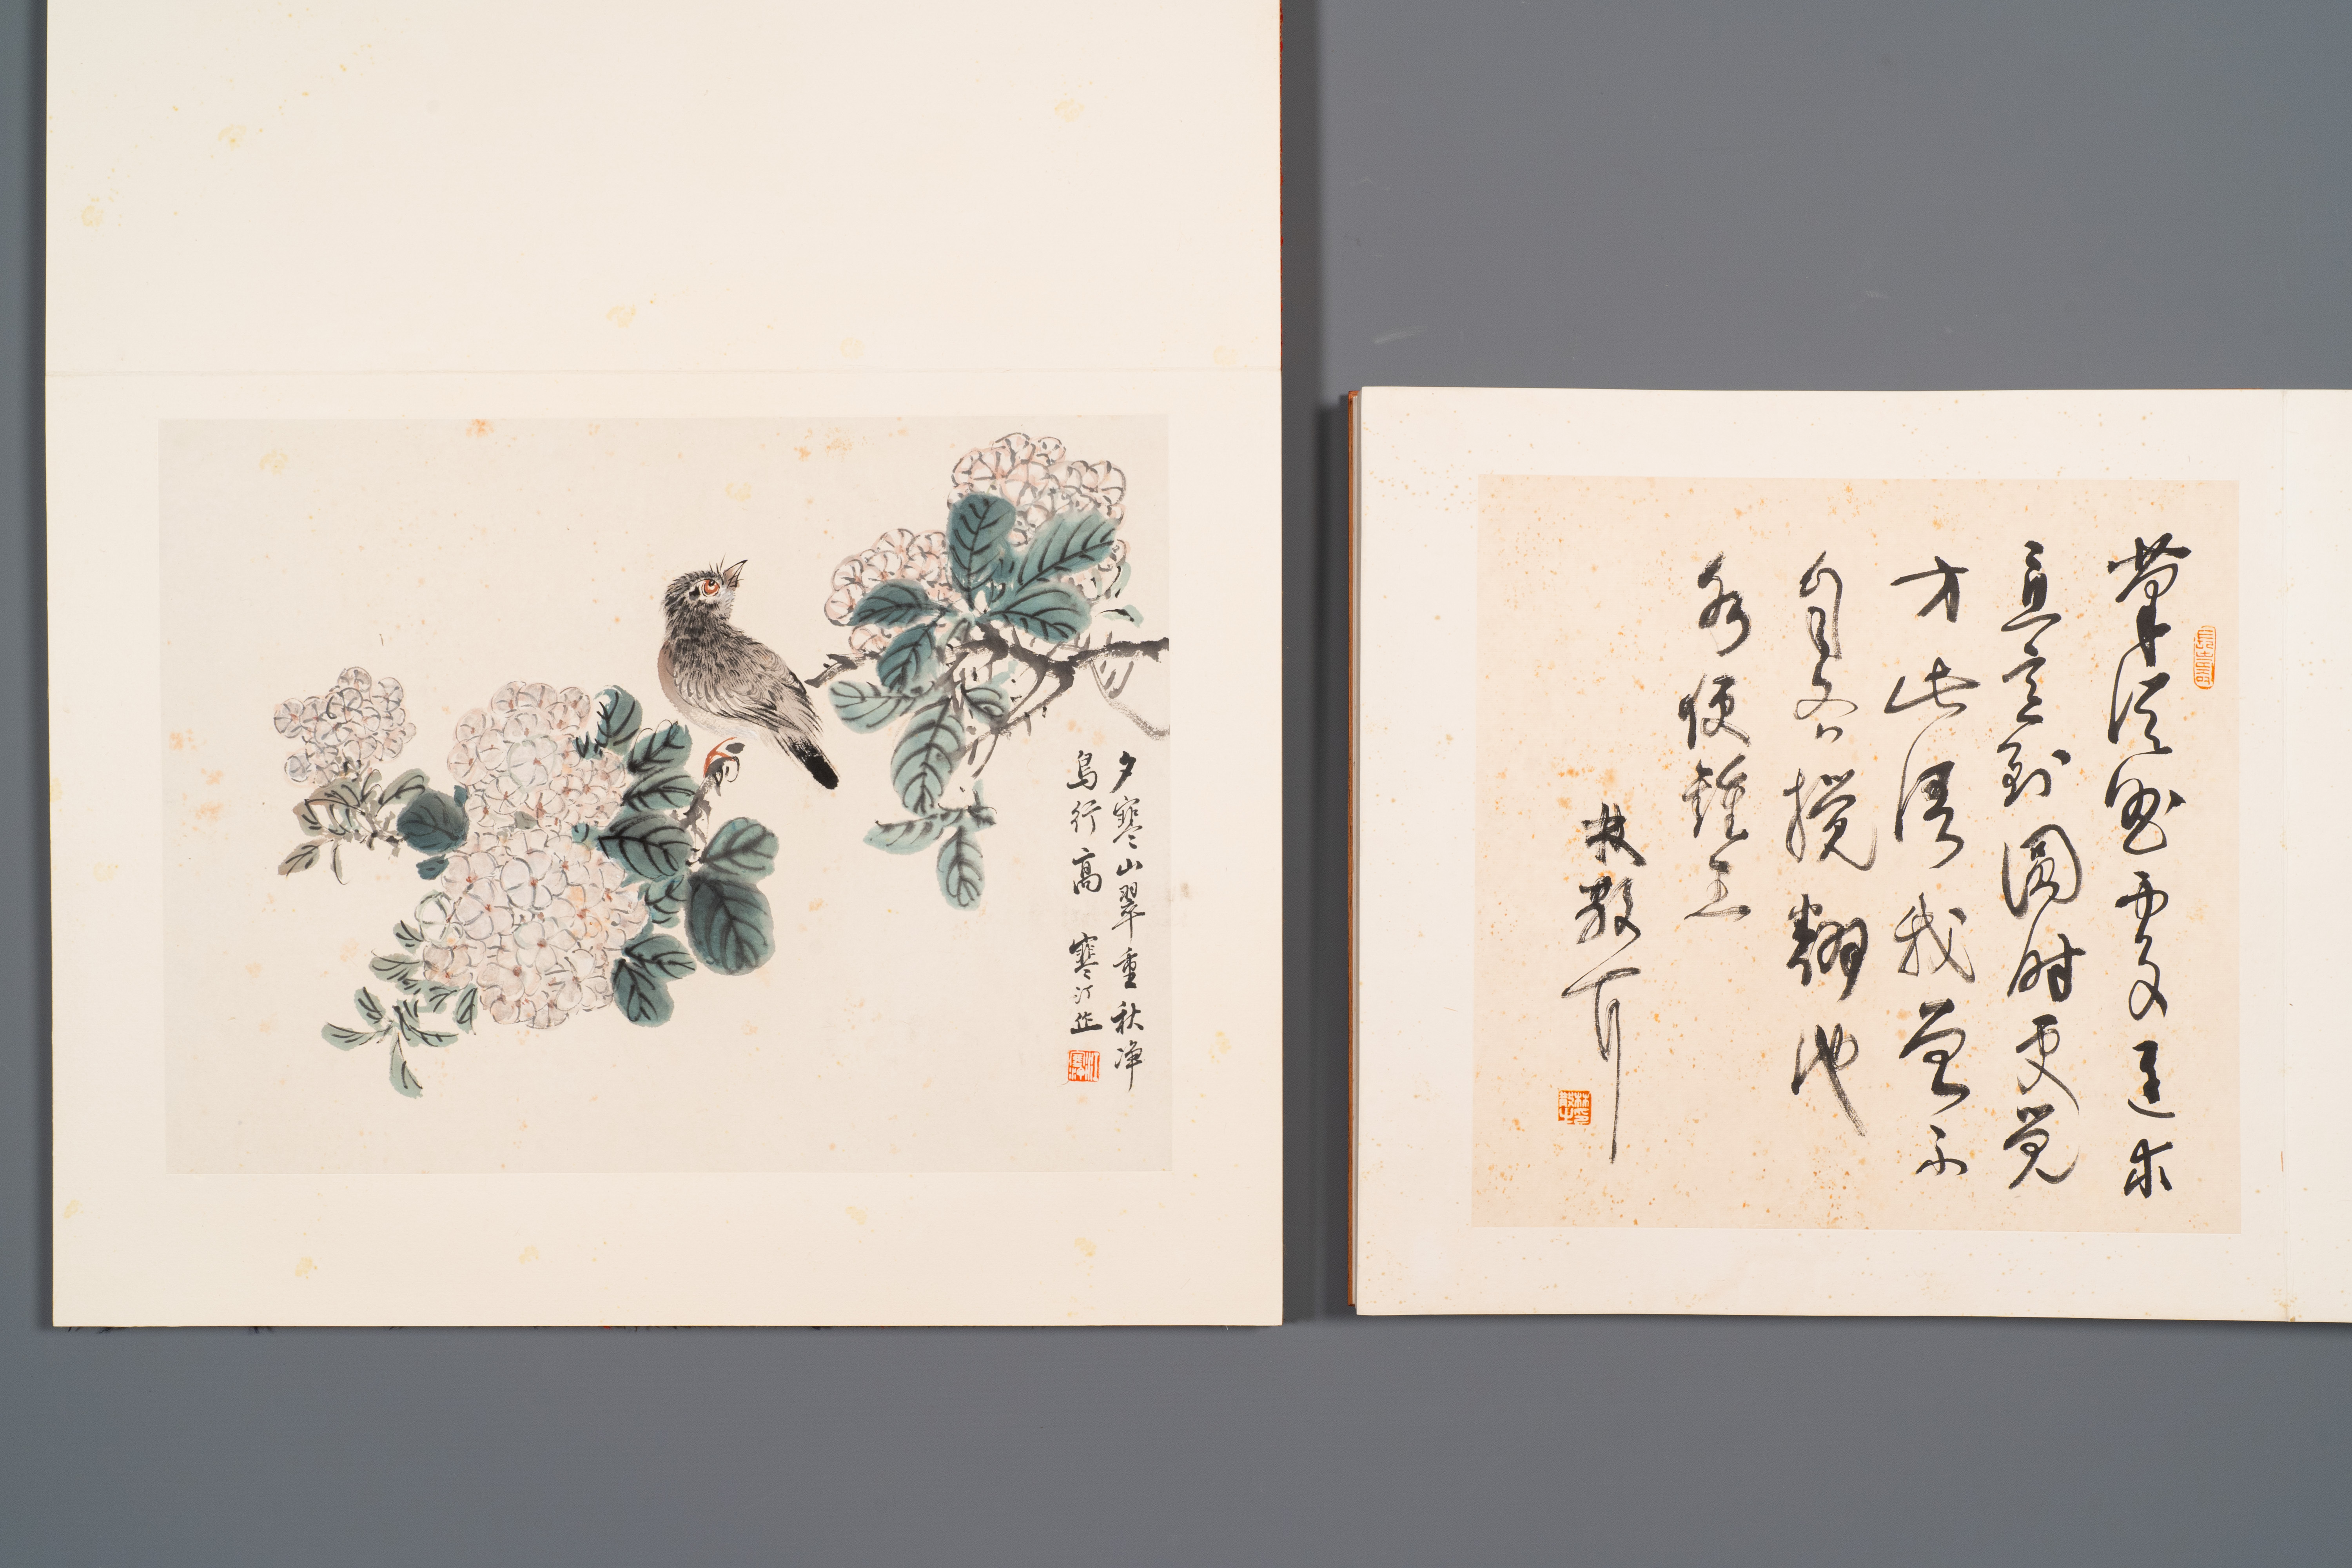 Three albums: 'Jiang Hanting æ±Ÿå¯’æ±€ (1904-1963), Lin Sanzhi æž—æ•£ä¹‹ (1898-1989) and Qi Gong å¯ - Image 4 of 23